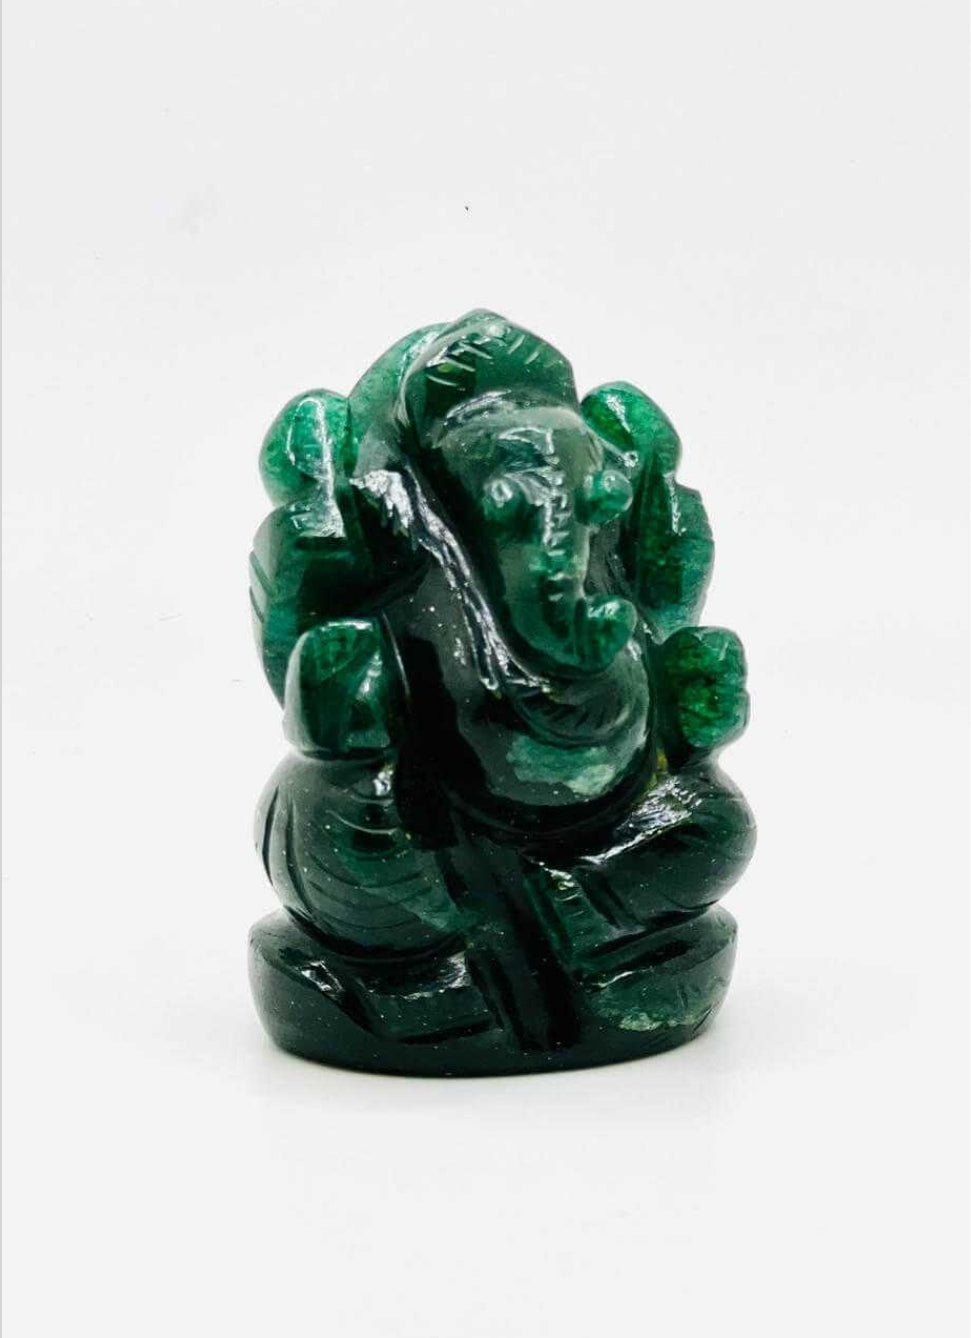 Green Jade Ganesha 2" approx.